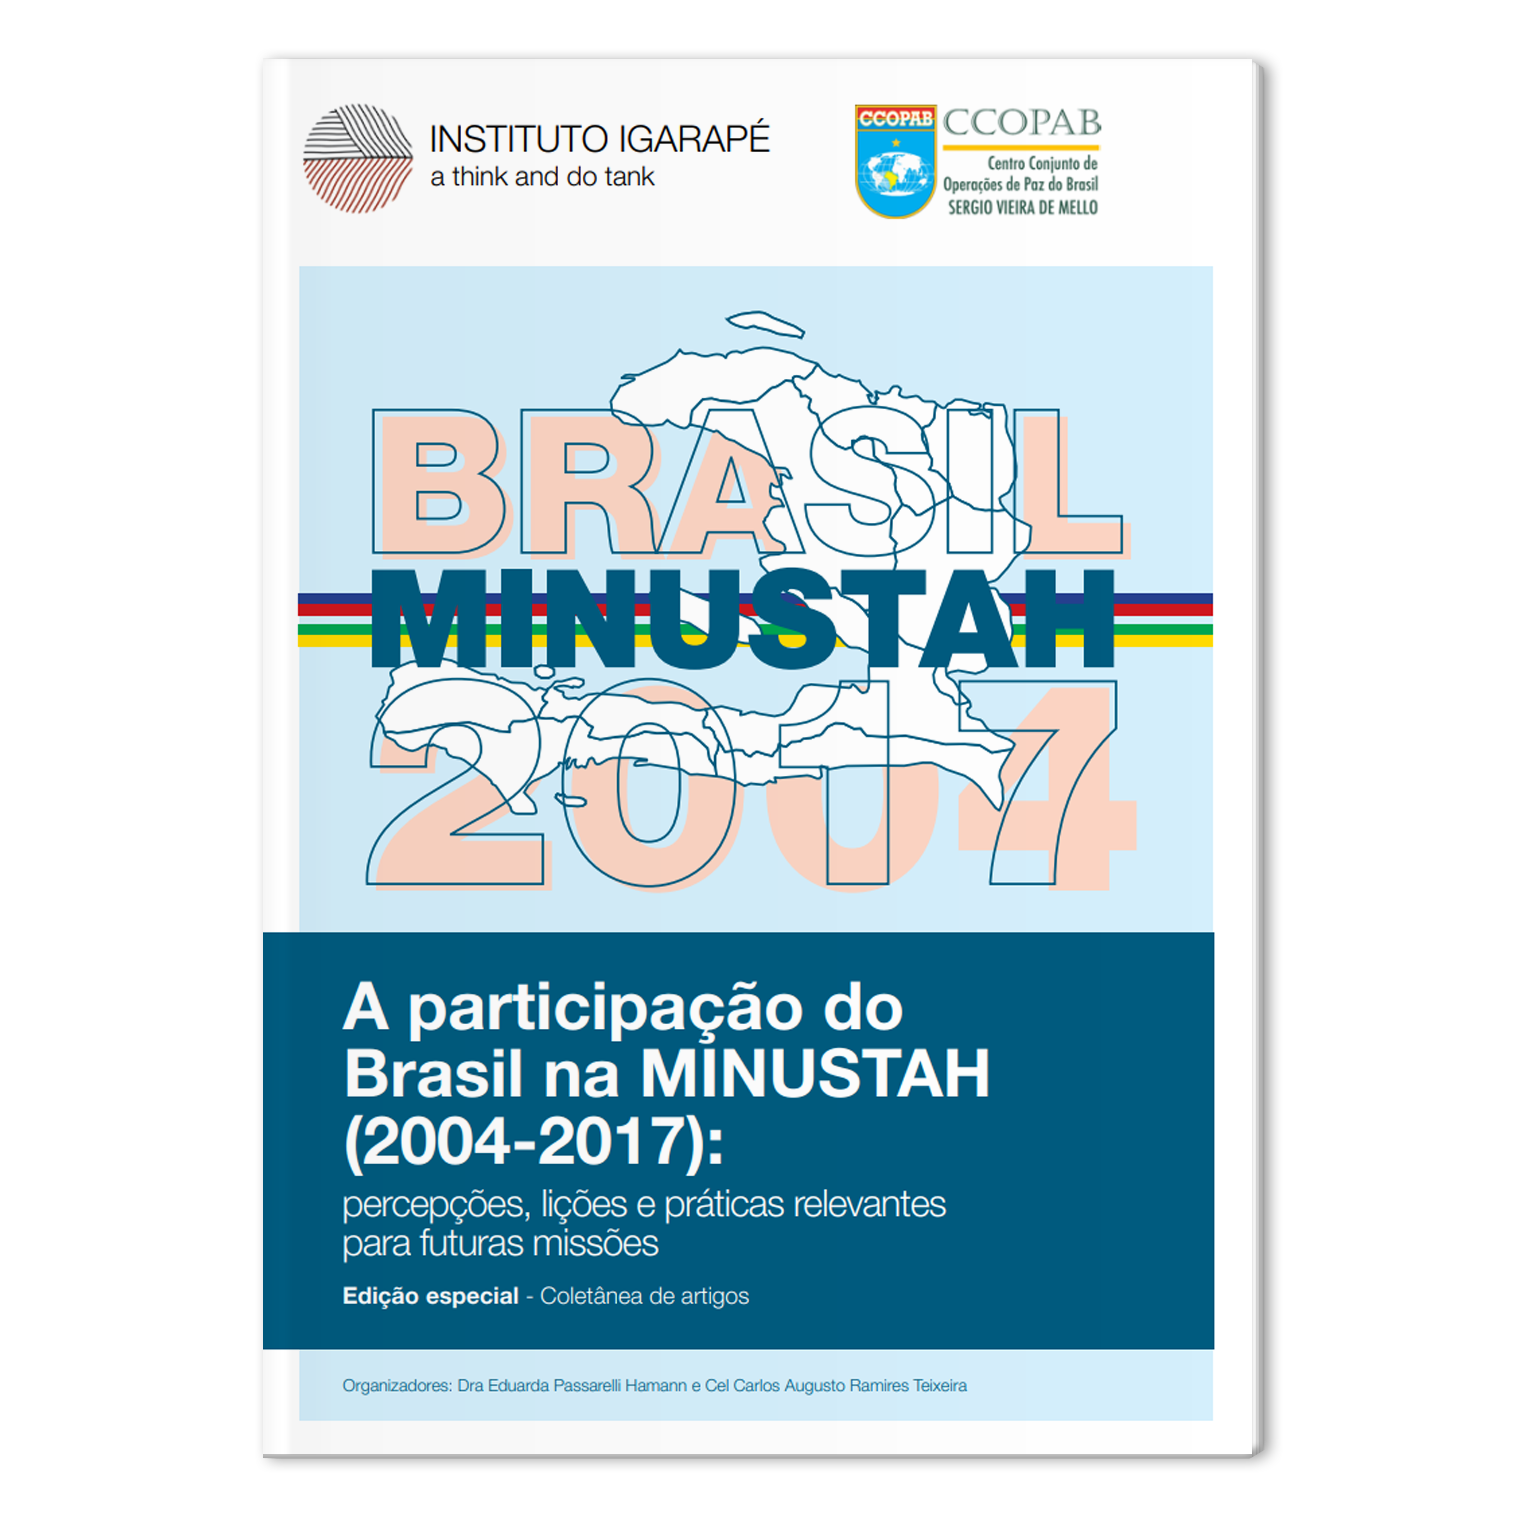 A participação do Brasil na MINUSTAH (2004-2017)